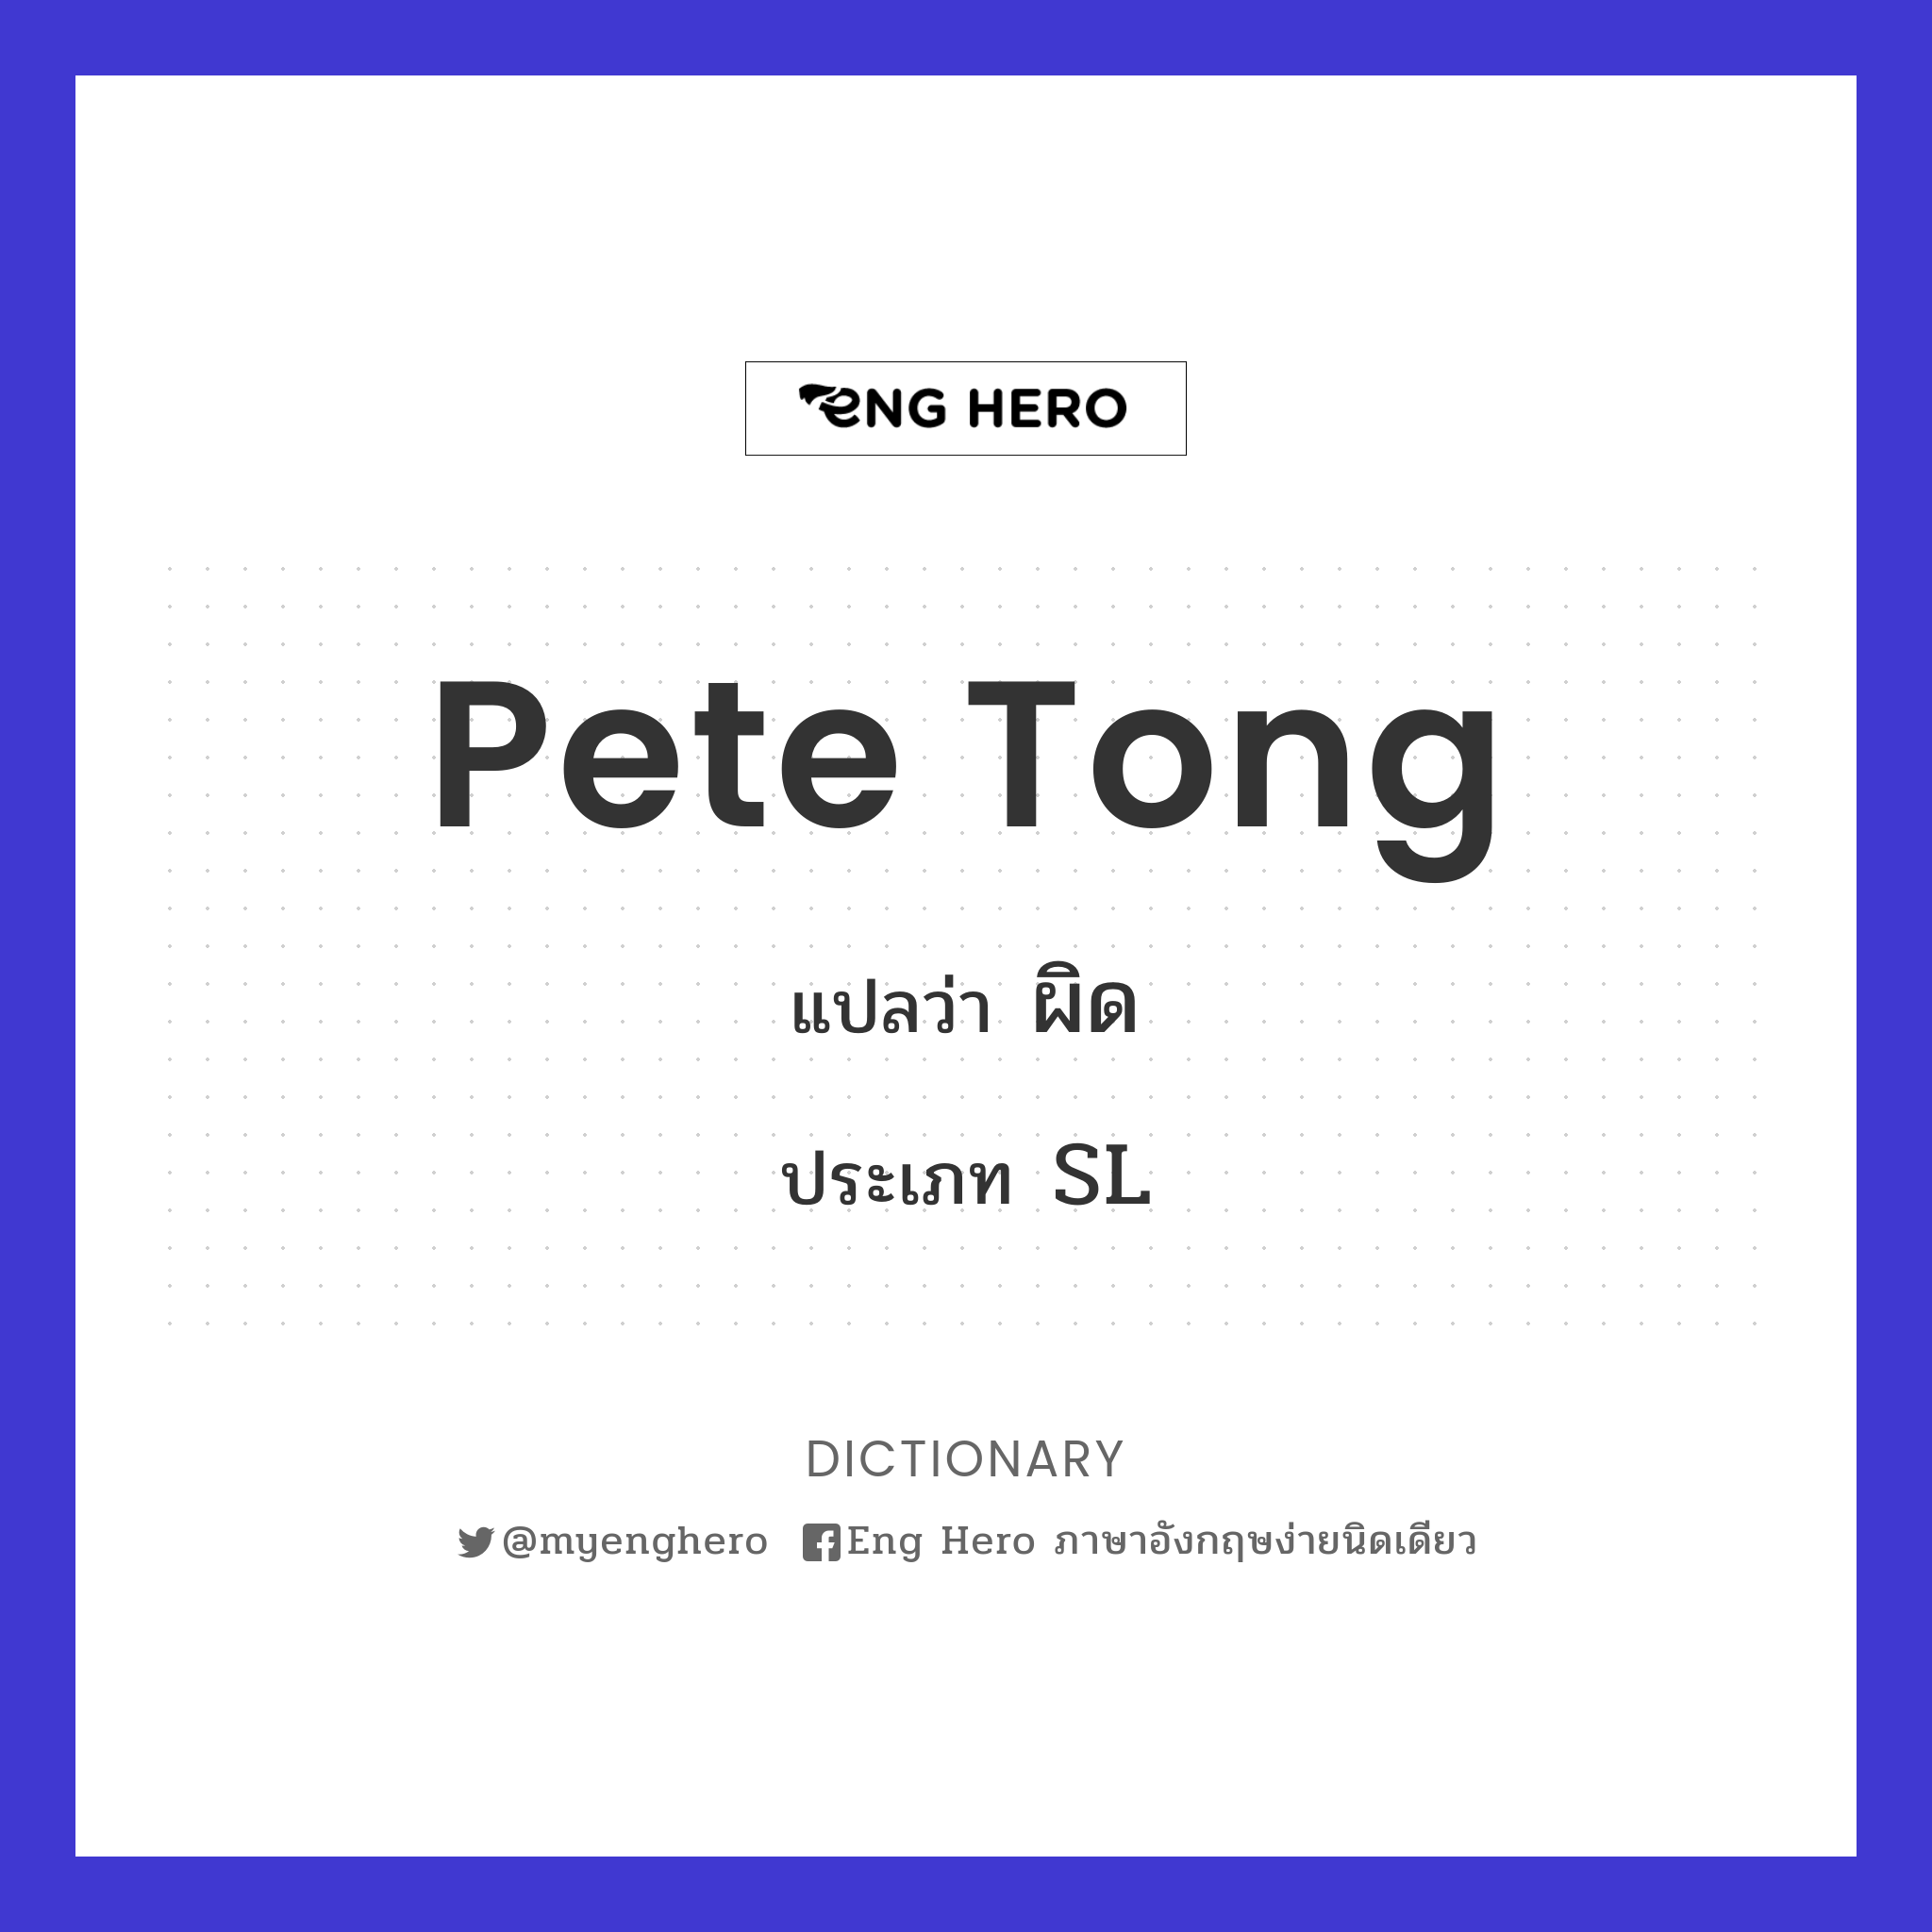 Pete tong